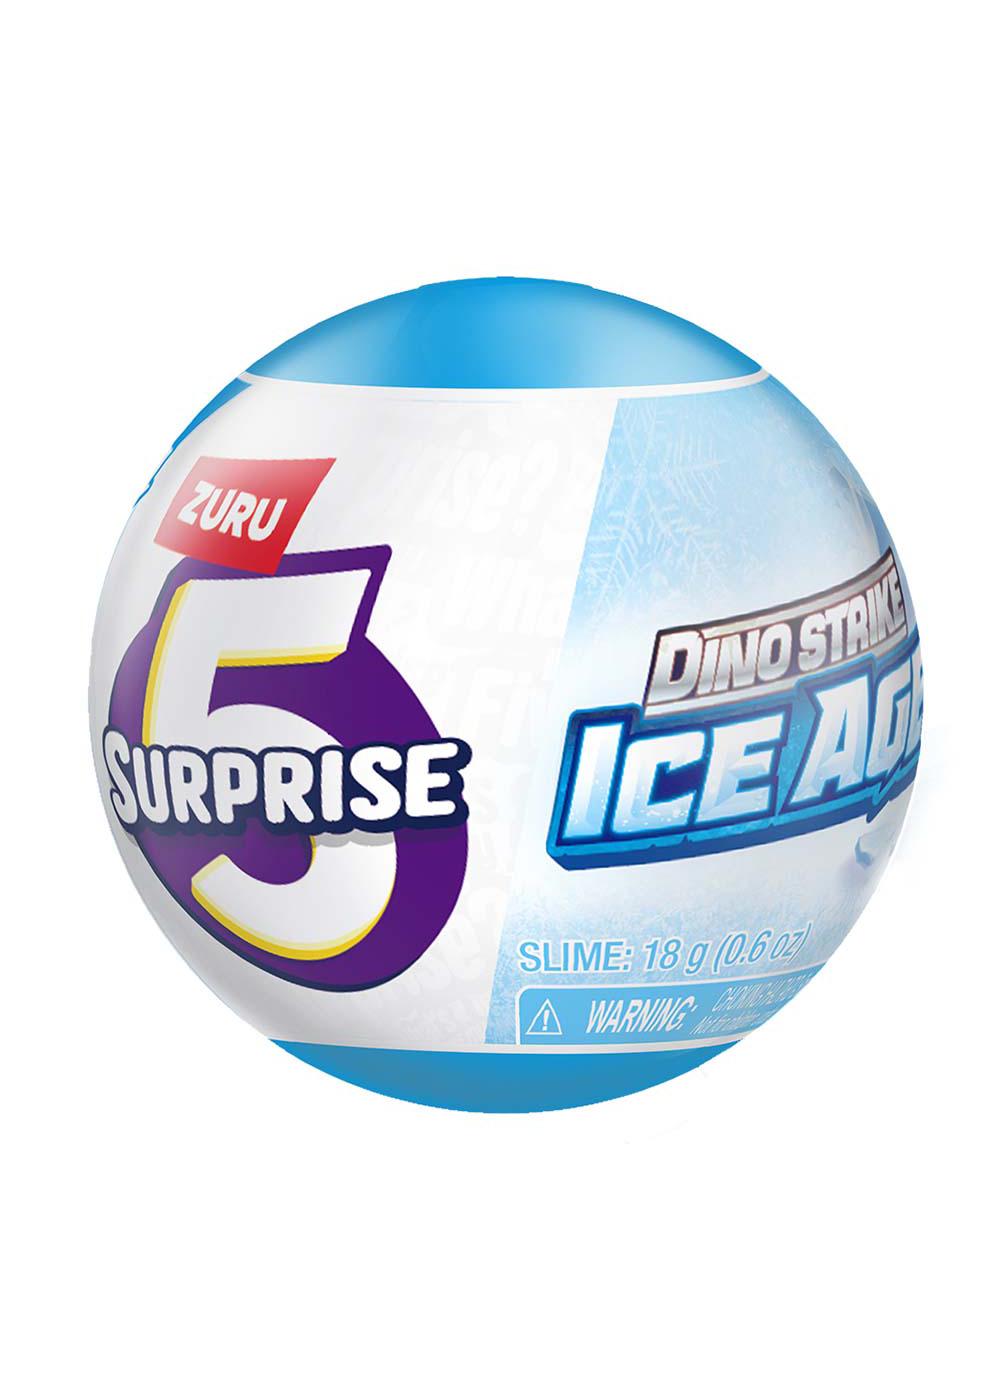 Zuru 5 Surprise Dino Strike Ice Age Capsule - Series 6; image 2 of 2